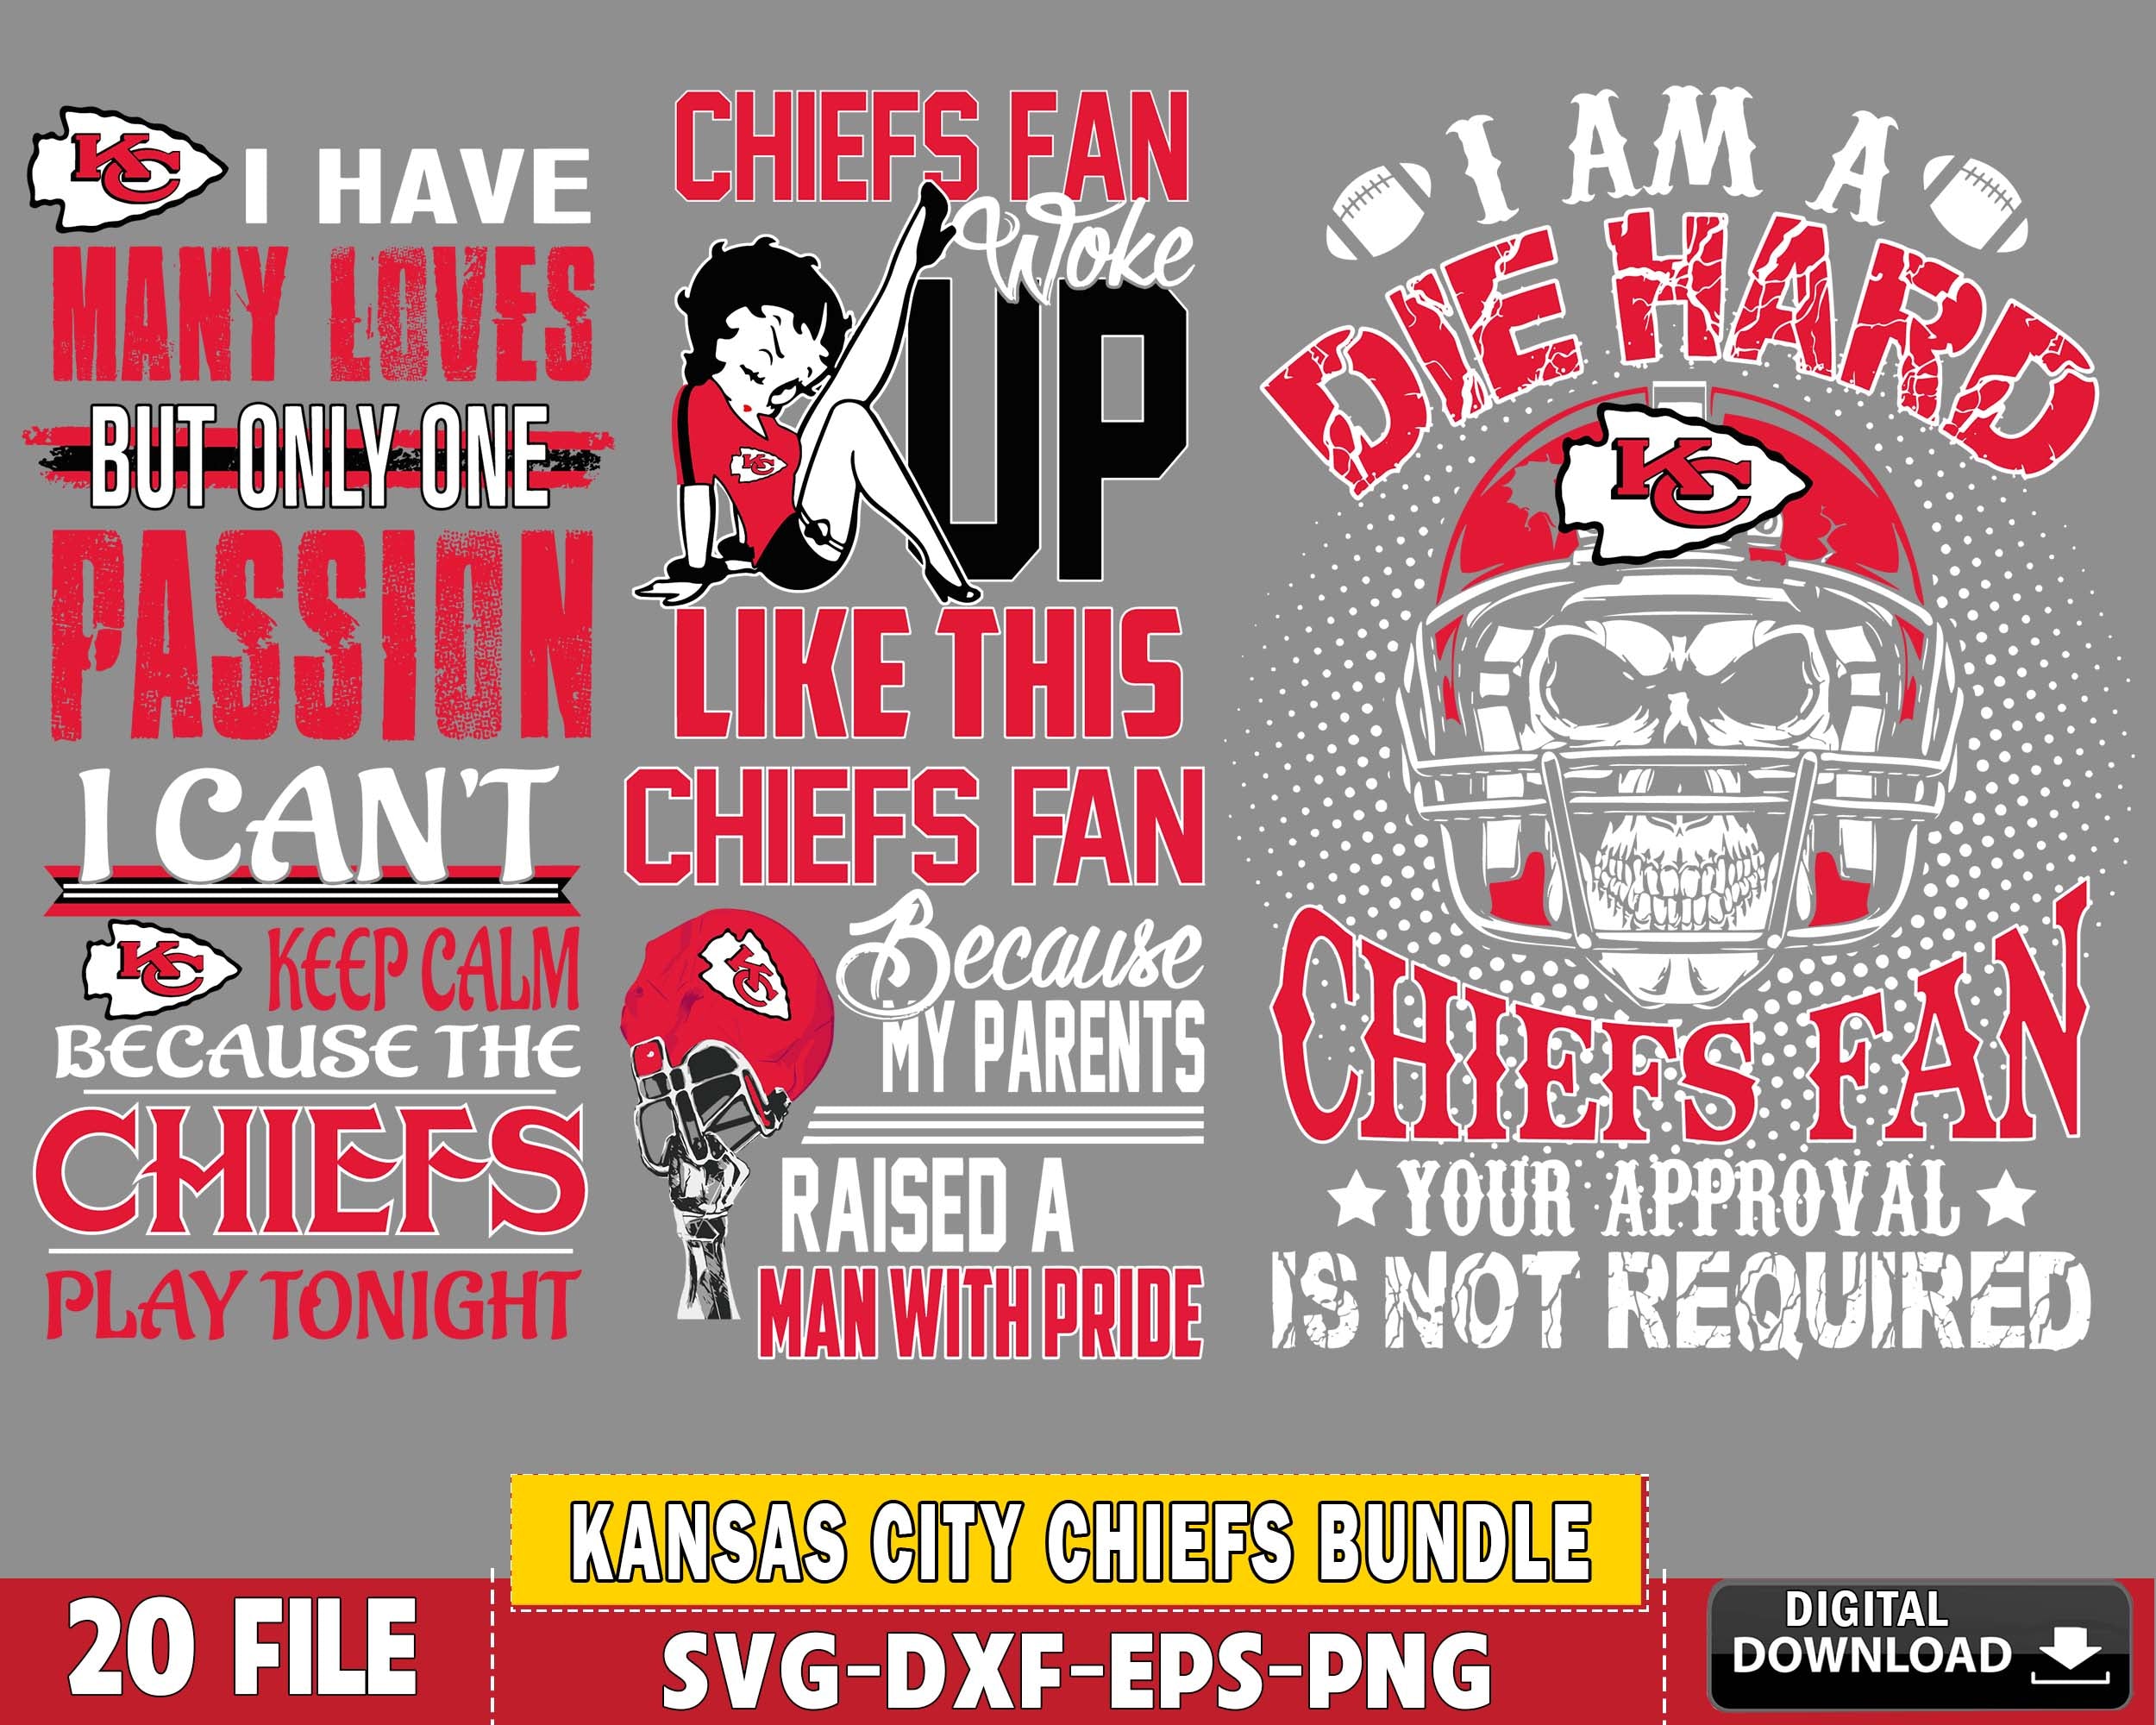 Kansas City Chiefs Logo Shirt Design SVG File for Cricut Maker and  Silhouette Cameo Digital Download